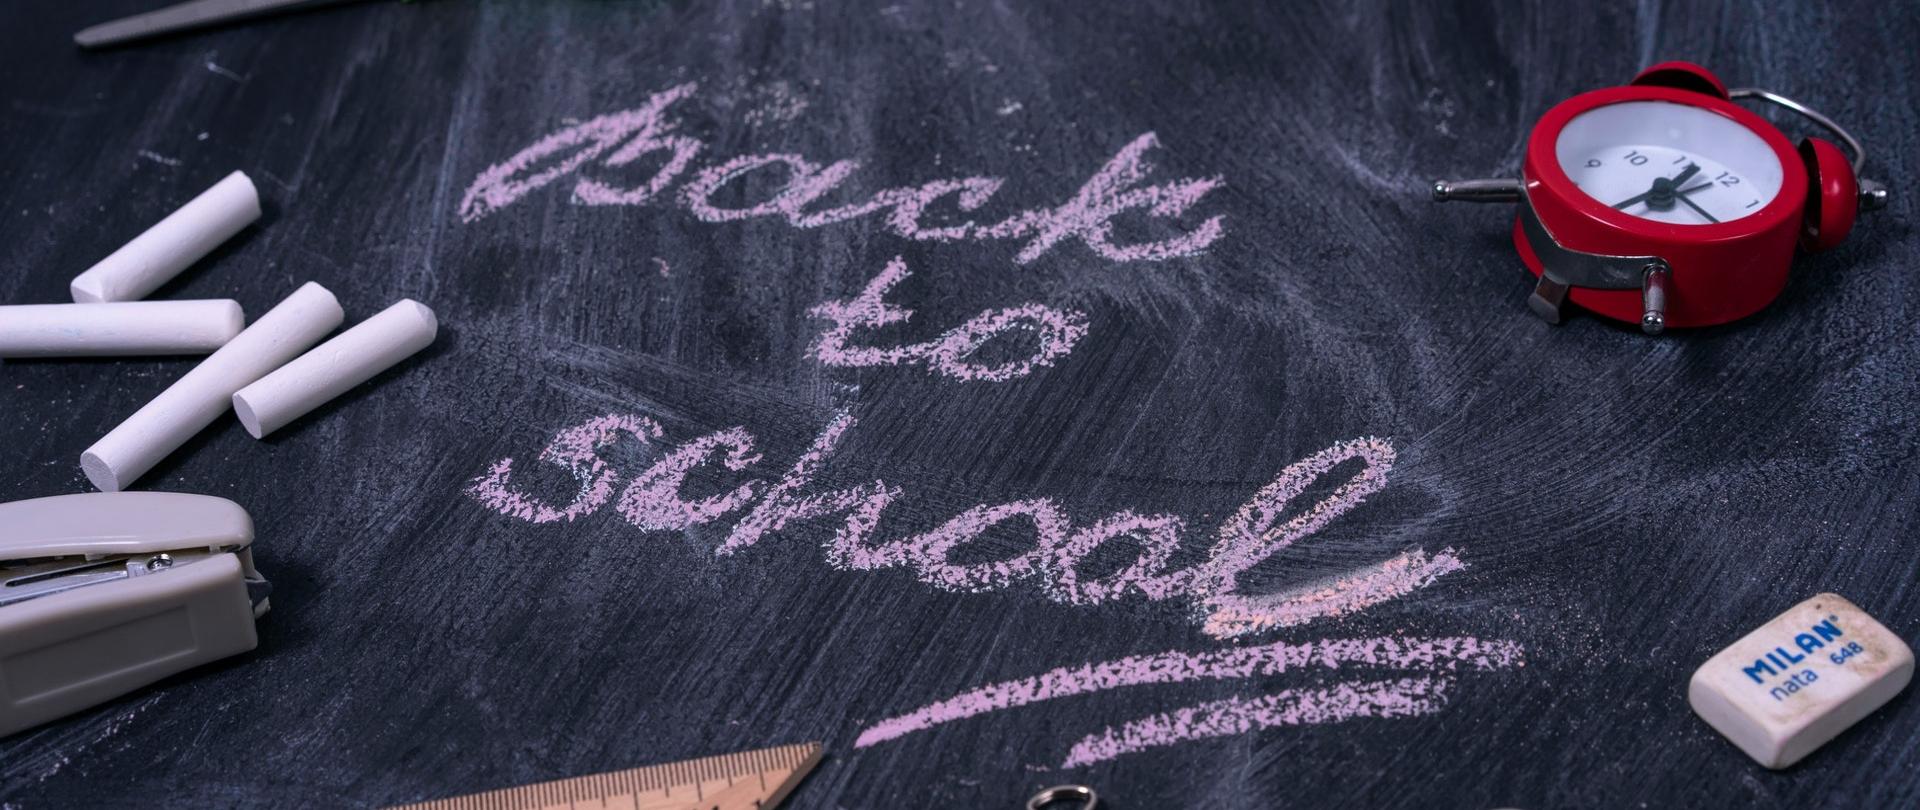 Zdjęcie przedstawia tablicę szkolną z napisem "back to school"